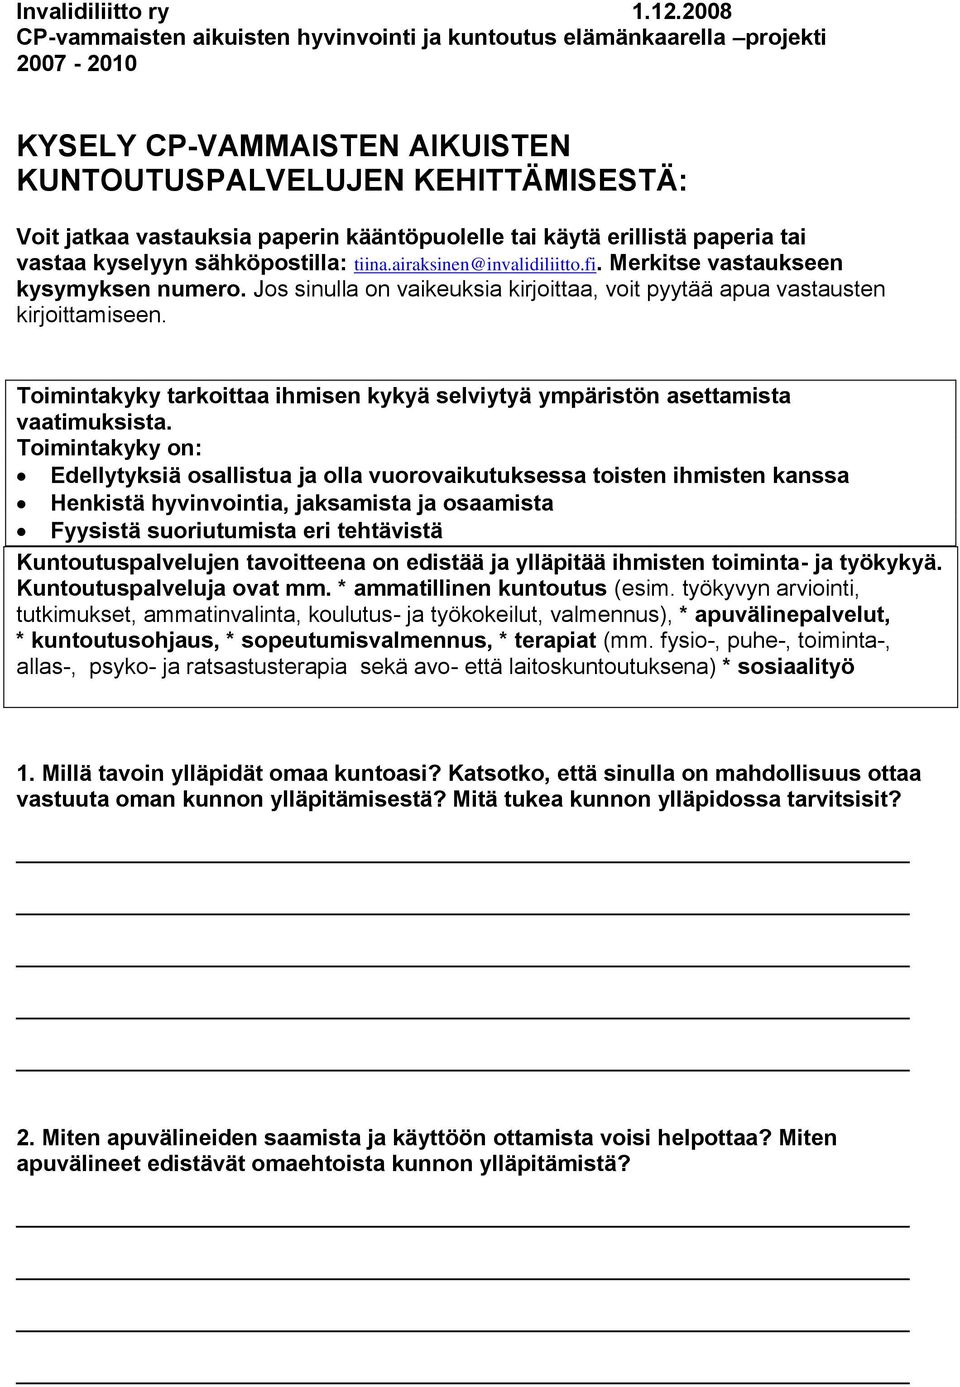 kääntöpuolelle tai käytä erillistä paperia tai vastaa kyselyyn sähköpostilla: tiina.airaksinen@invalidiliitto.fi. Merkitse vastaukseen kysymyksen numero.